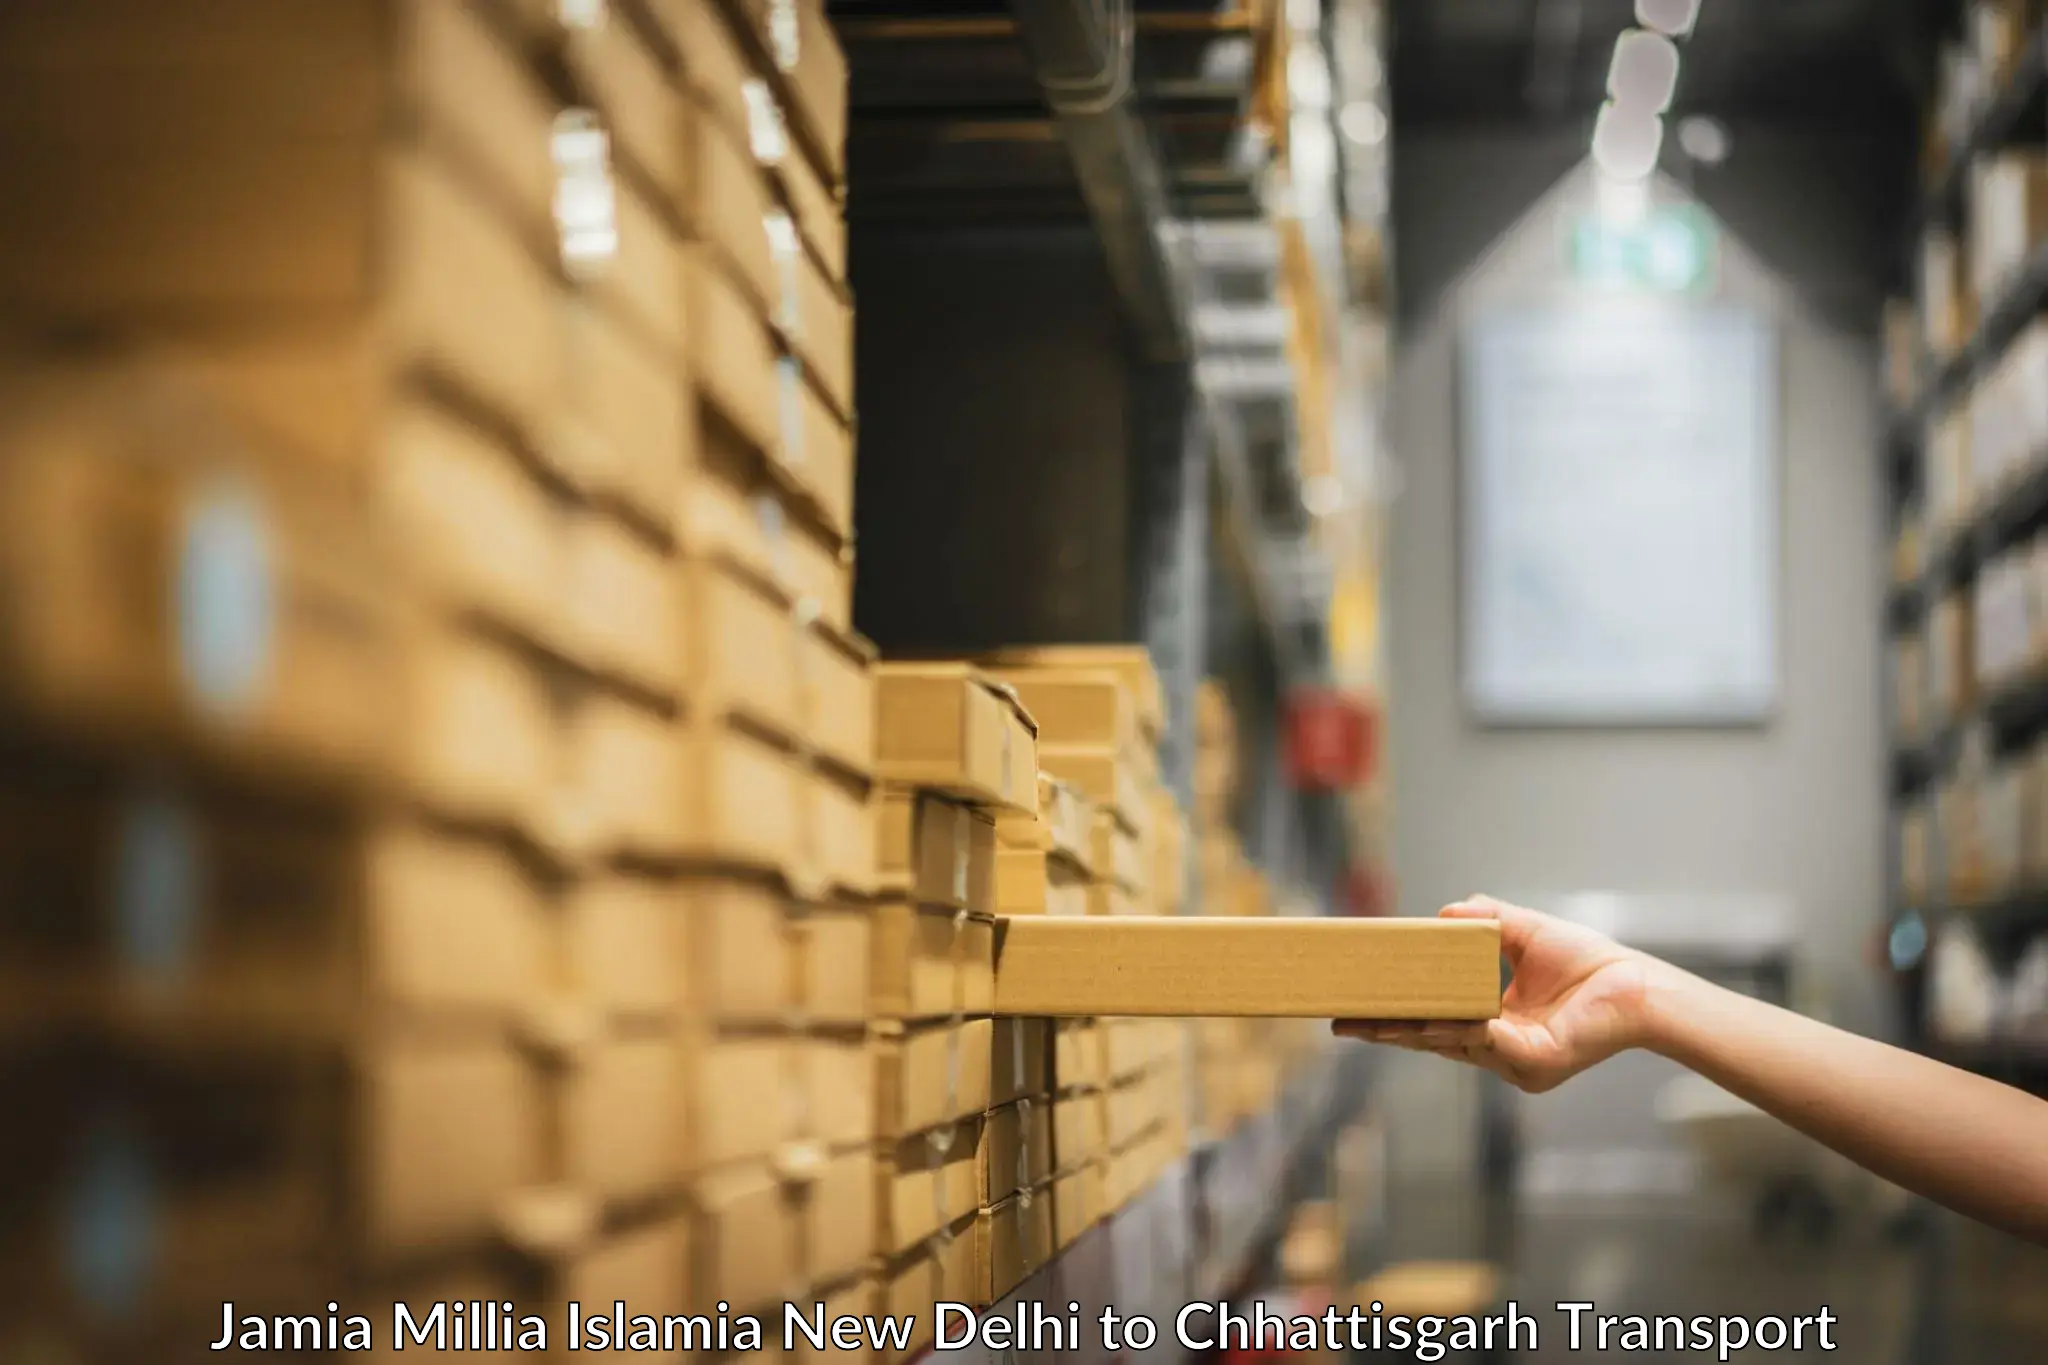 Part load transport service in India Jamia Millia Islamia New Delhi to Raigarh Chhattisgarh